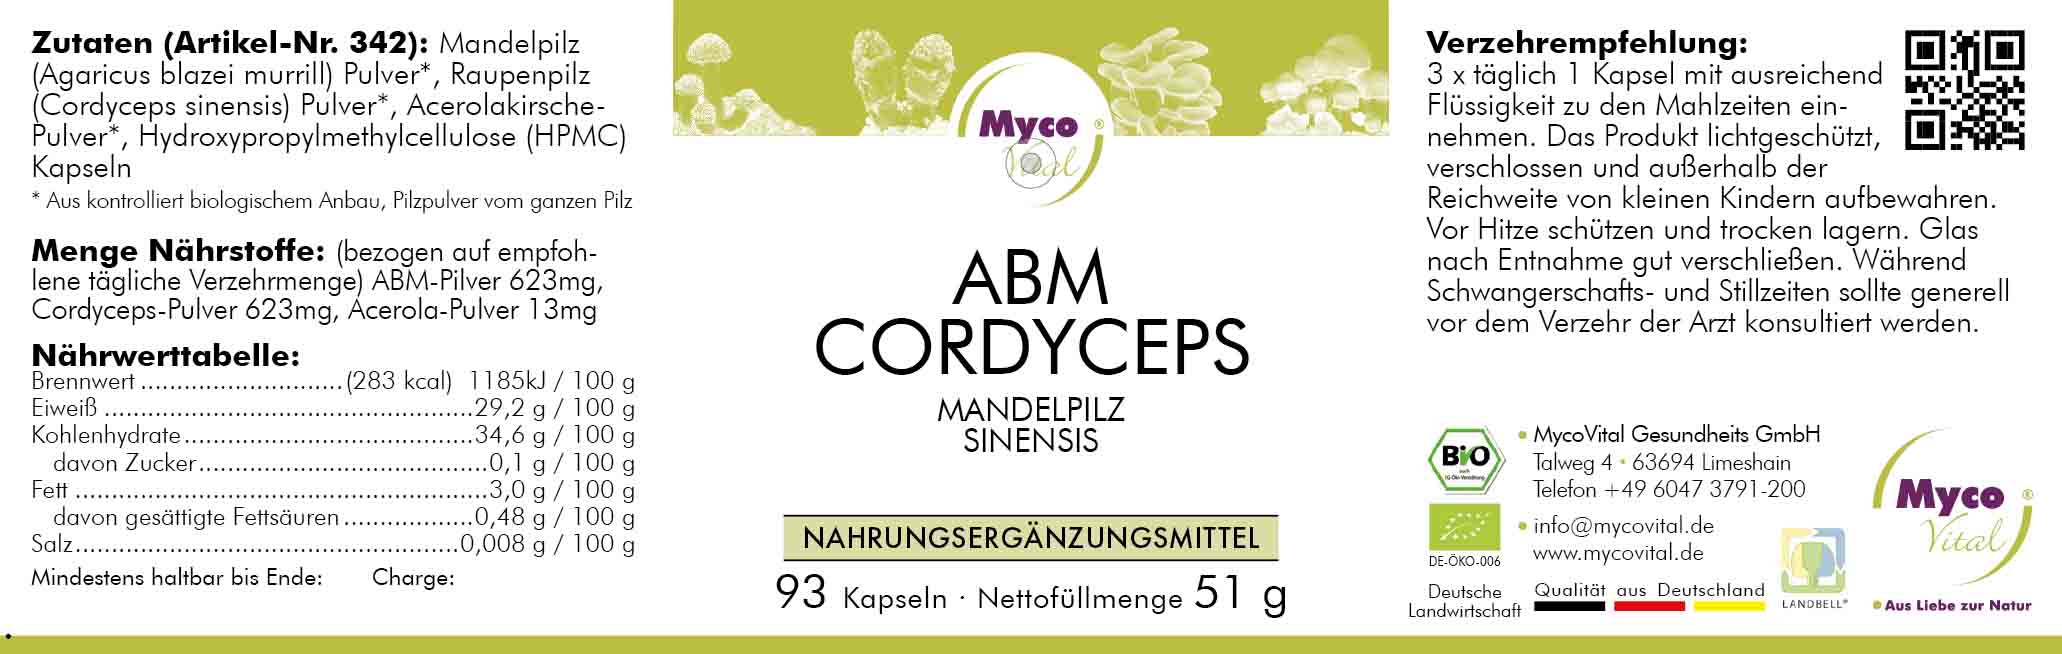 ABM-Cordyceps Organic mushroom powder capsules (blend 342)